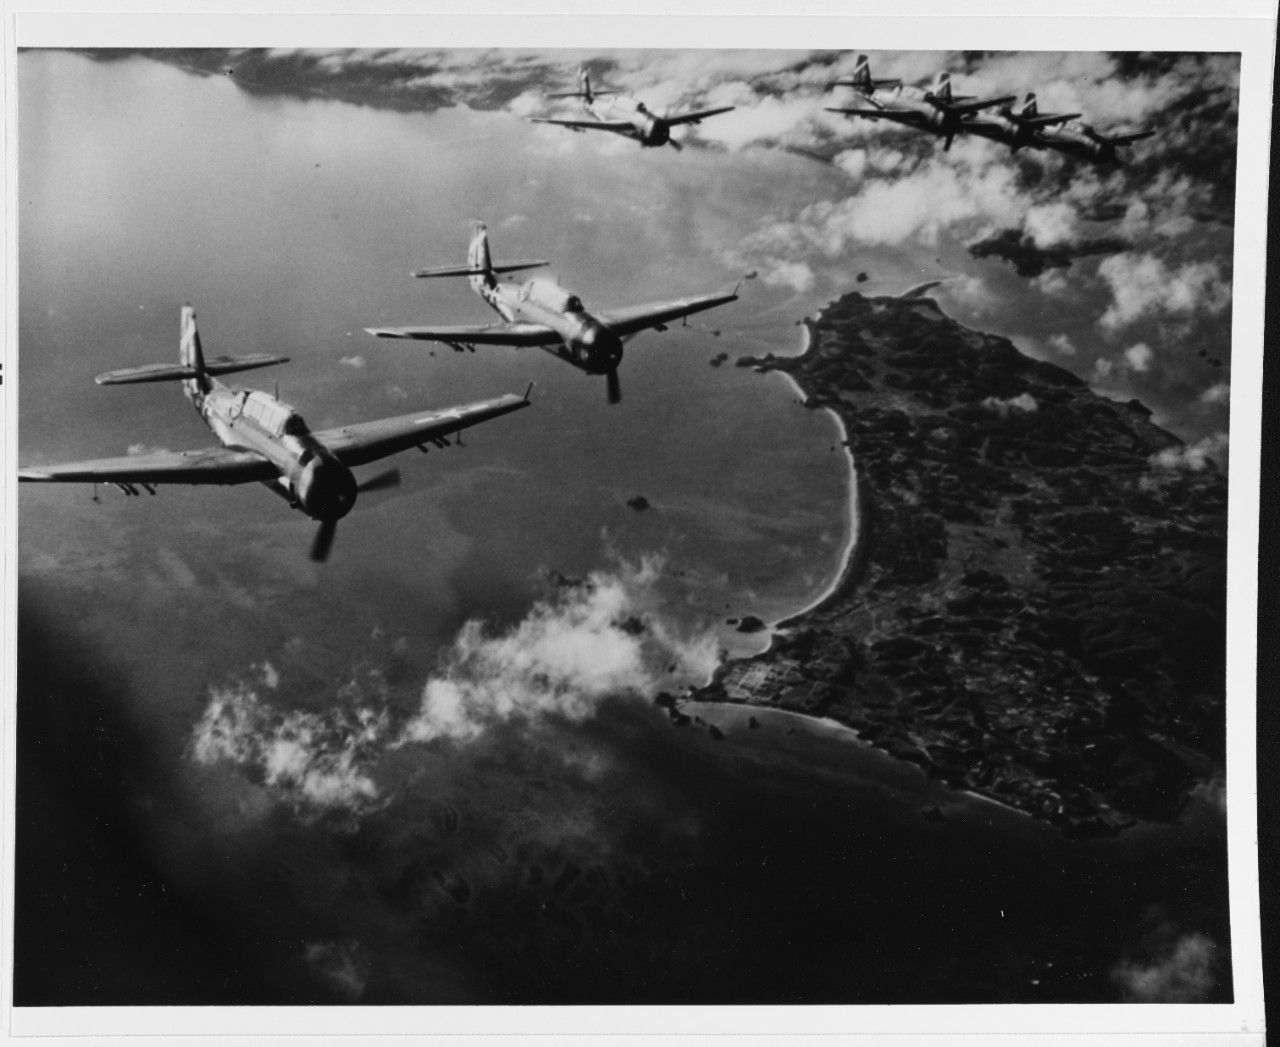 Okinawa, Ryukyus Islands, April 1945